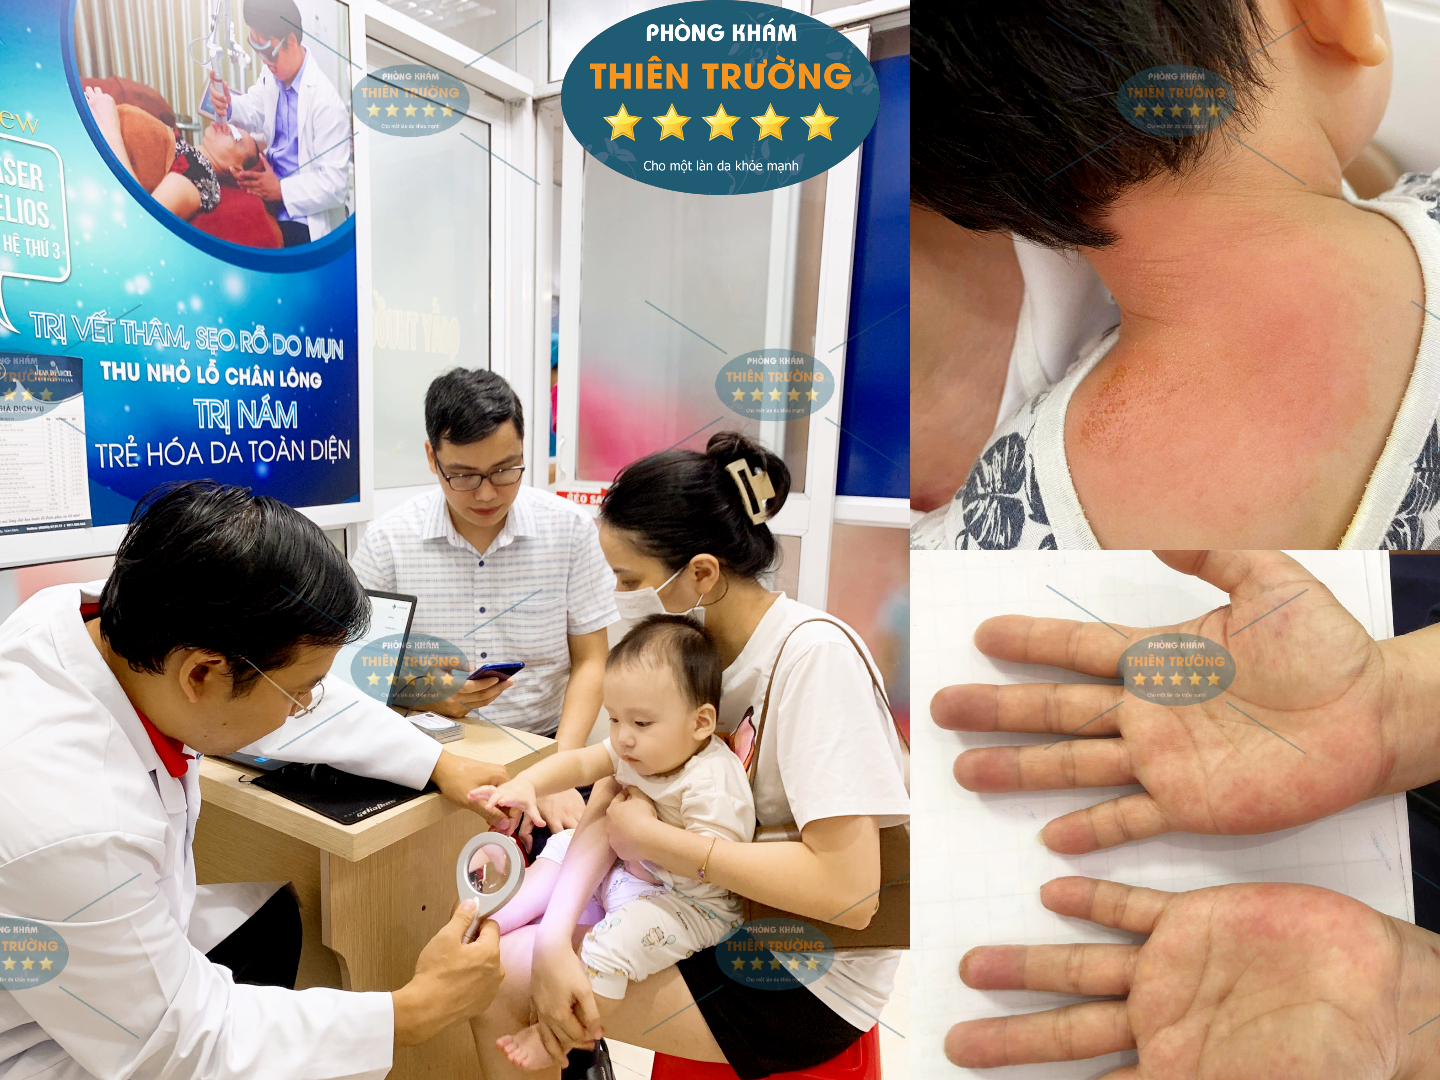 Hình ảnh: Thạc sĩ- Bác sĩ chuyên khoa II Nguyễn Tiến Thành đang khám da cho khách hàng.